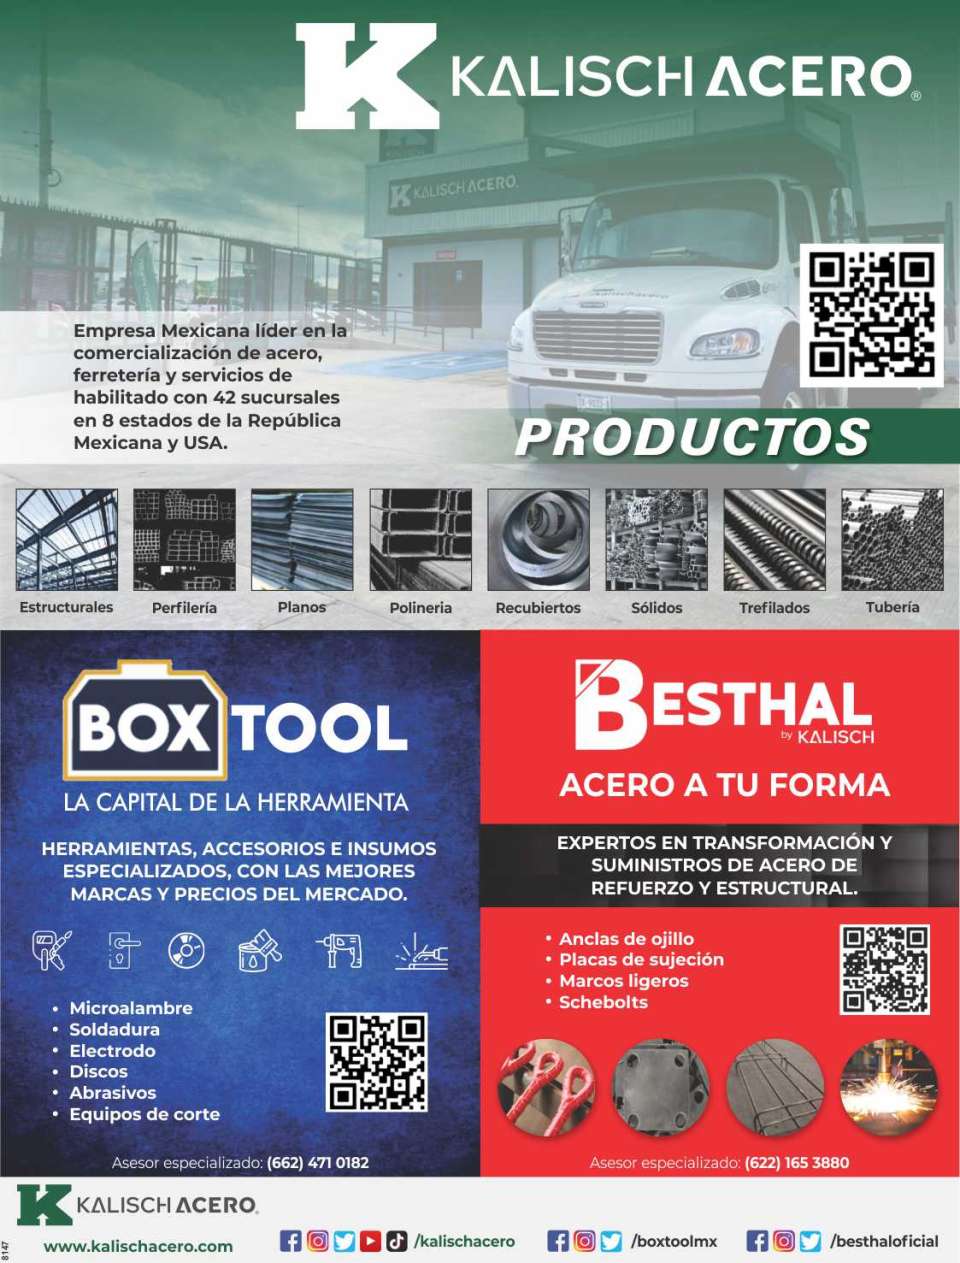 Empresa Mexicana lider en la comercializacion de acero, ferreteria y servicios de habilitado, con sus divisiones Boxtool y Besthal